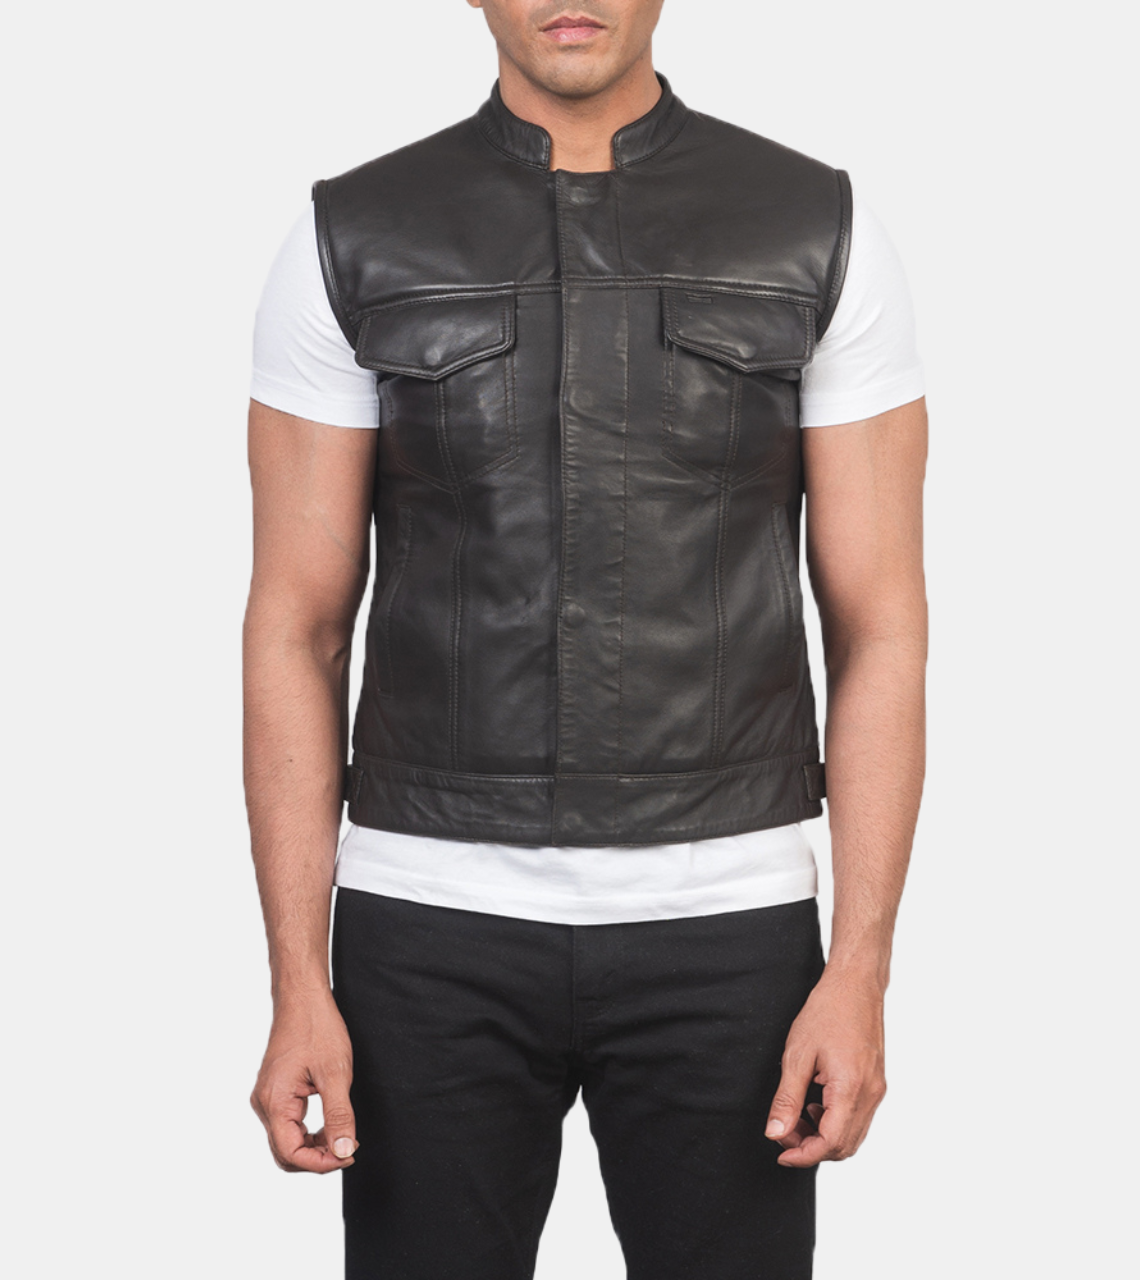 Marven Men's Black Leather Vest